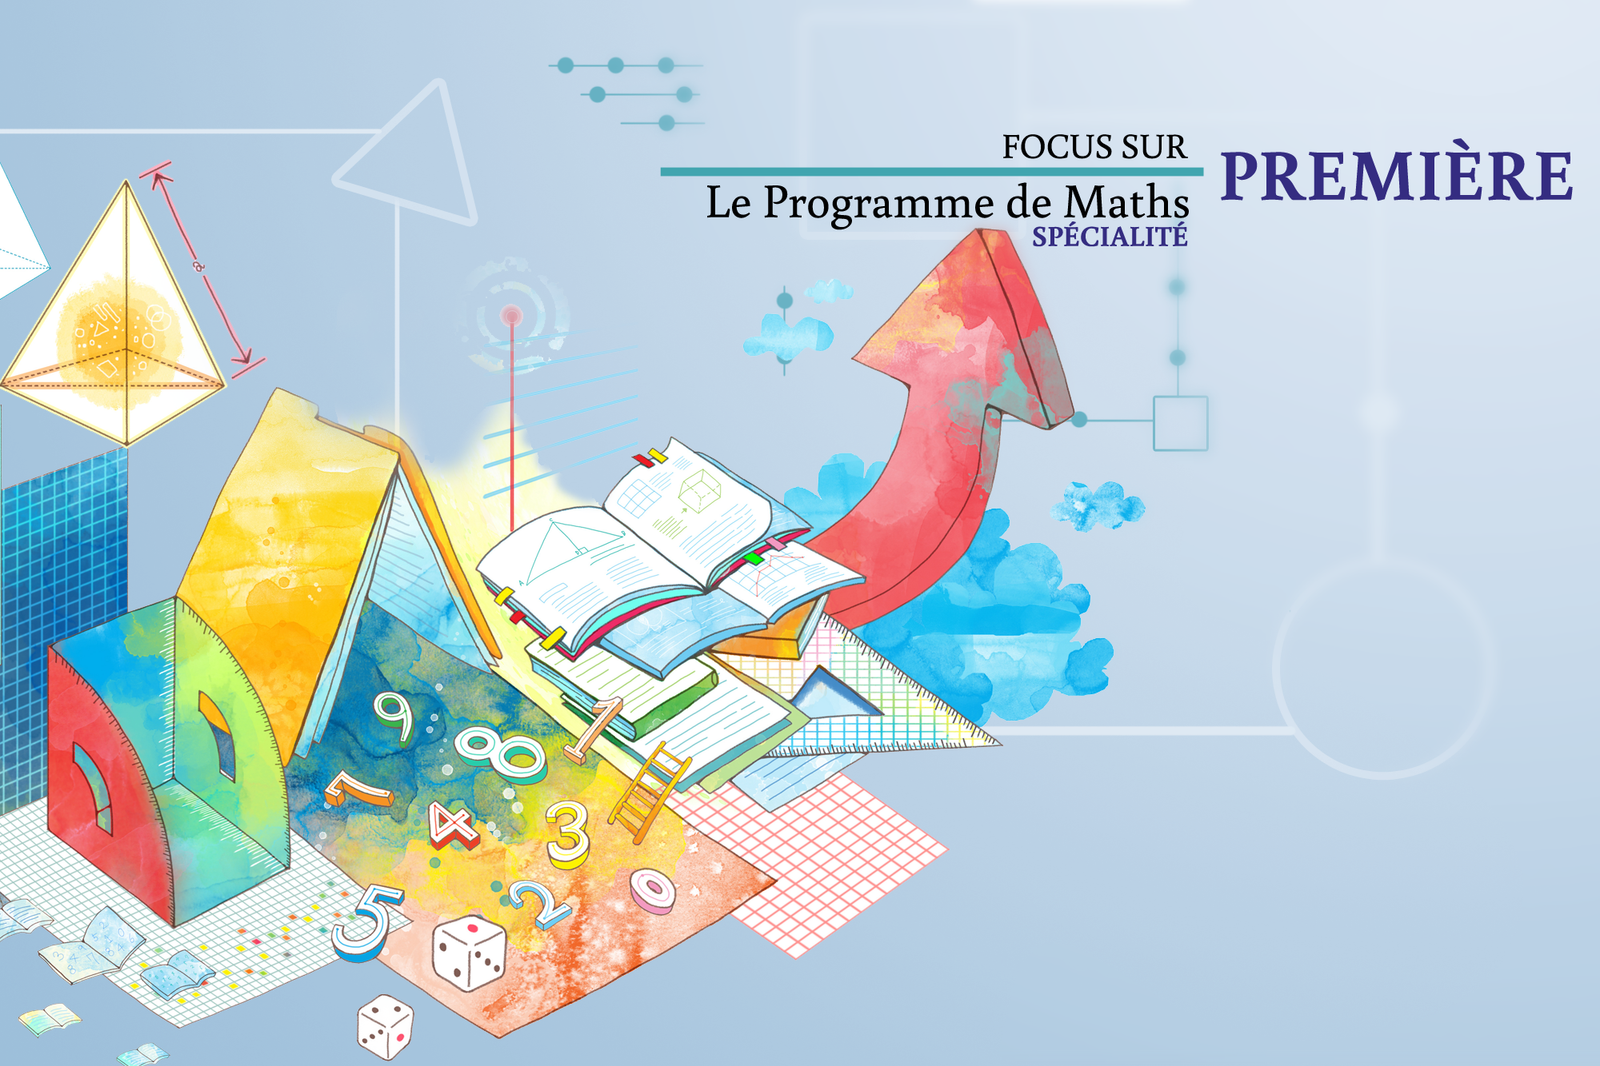 You are currently viewing La spécialité Maths en classe de 1ère générale